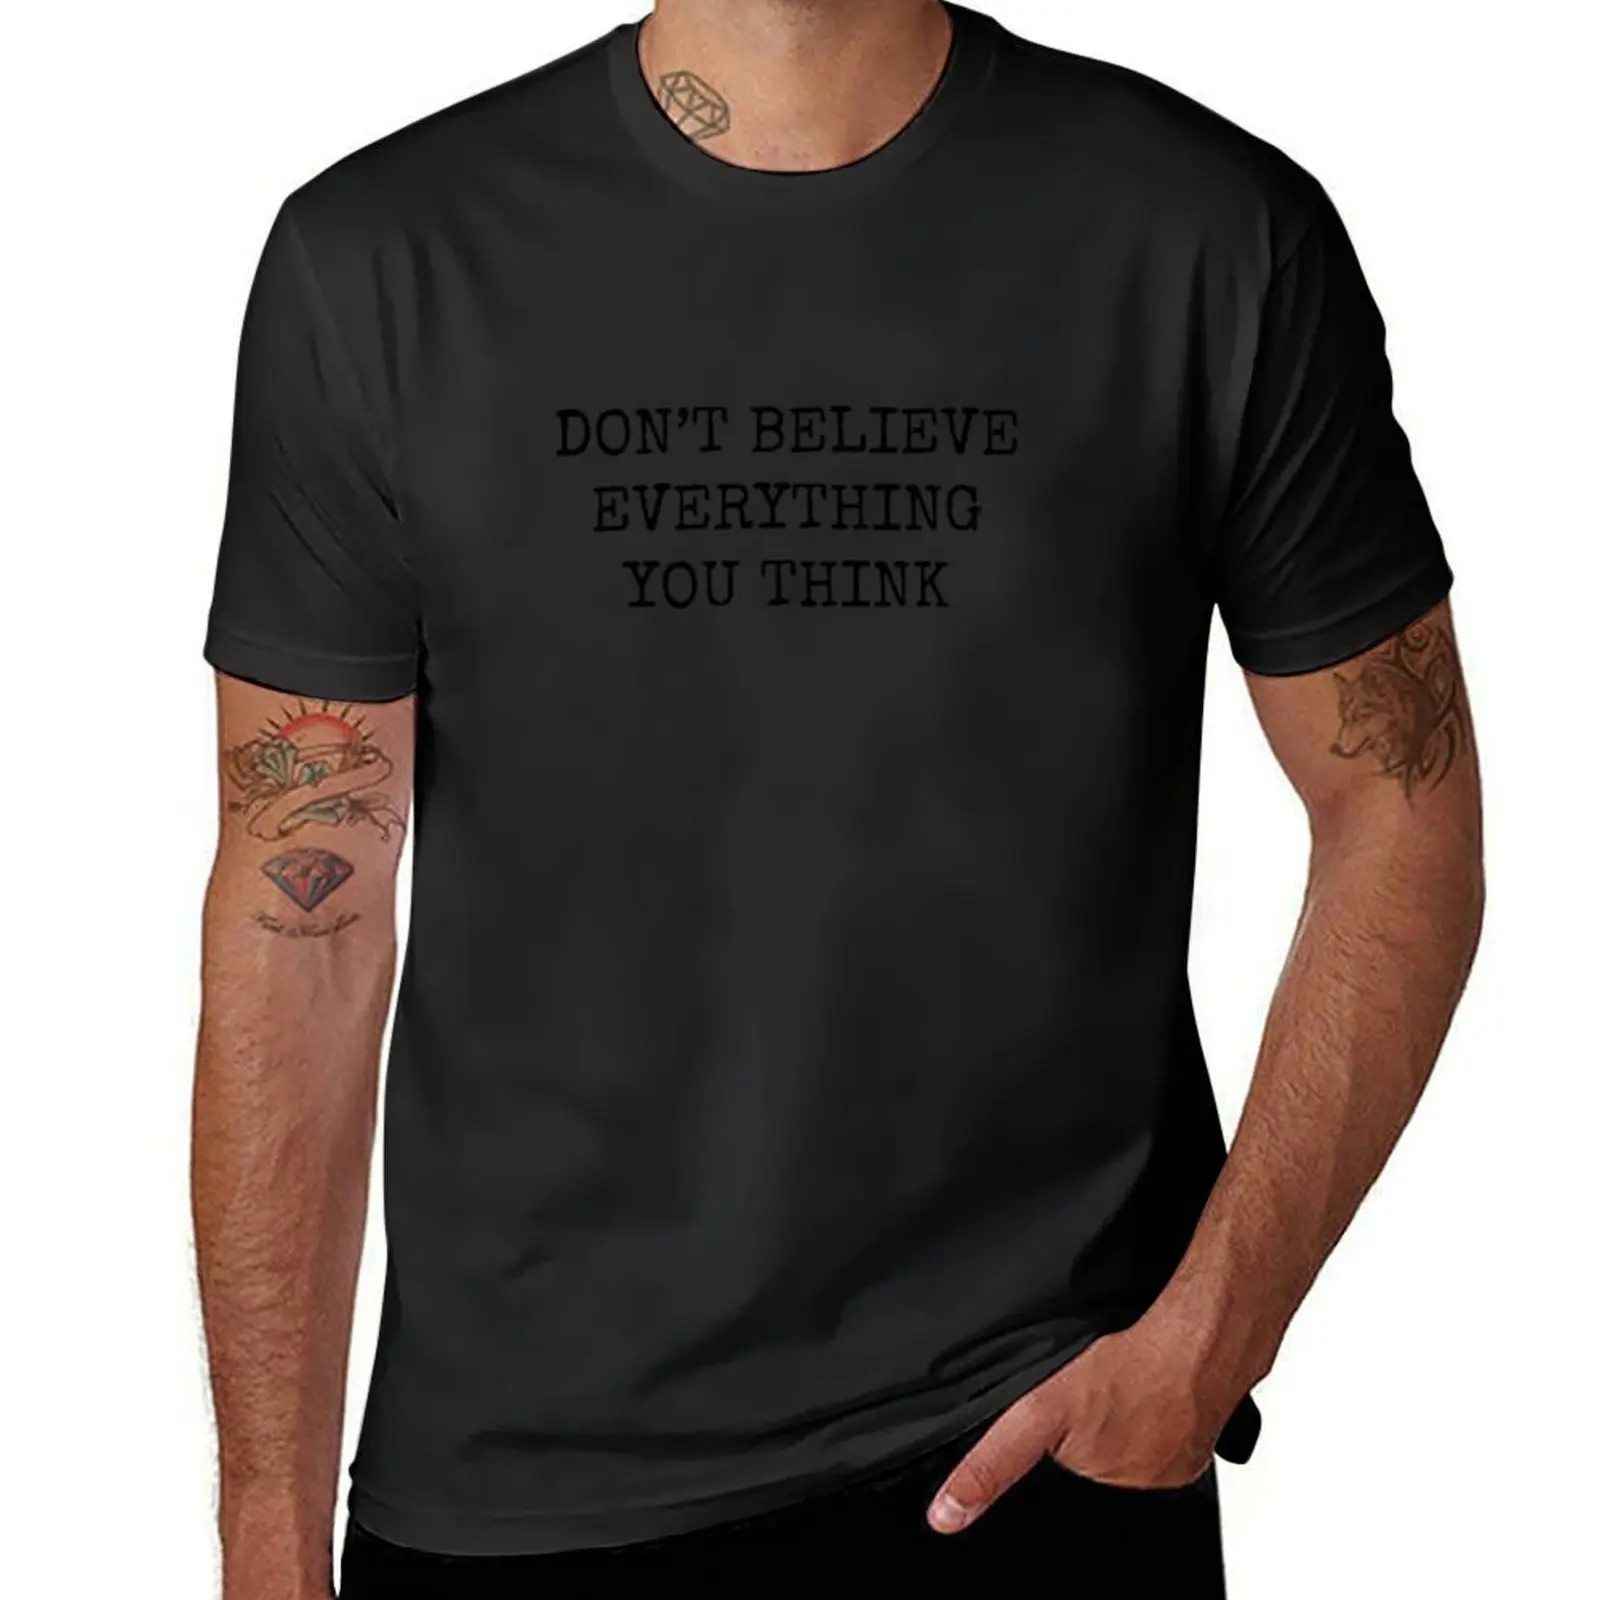 

Летняя мужская футболка с принтом надписи «не верите всё, что вы думаете»